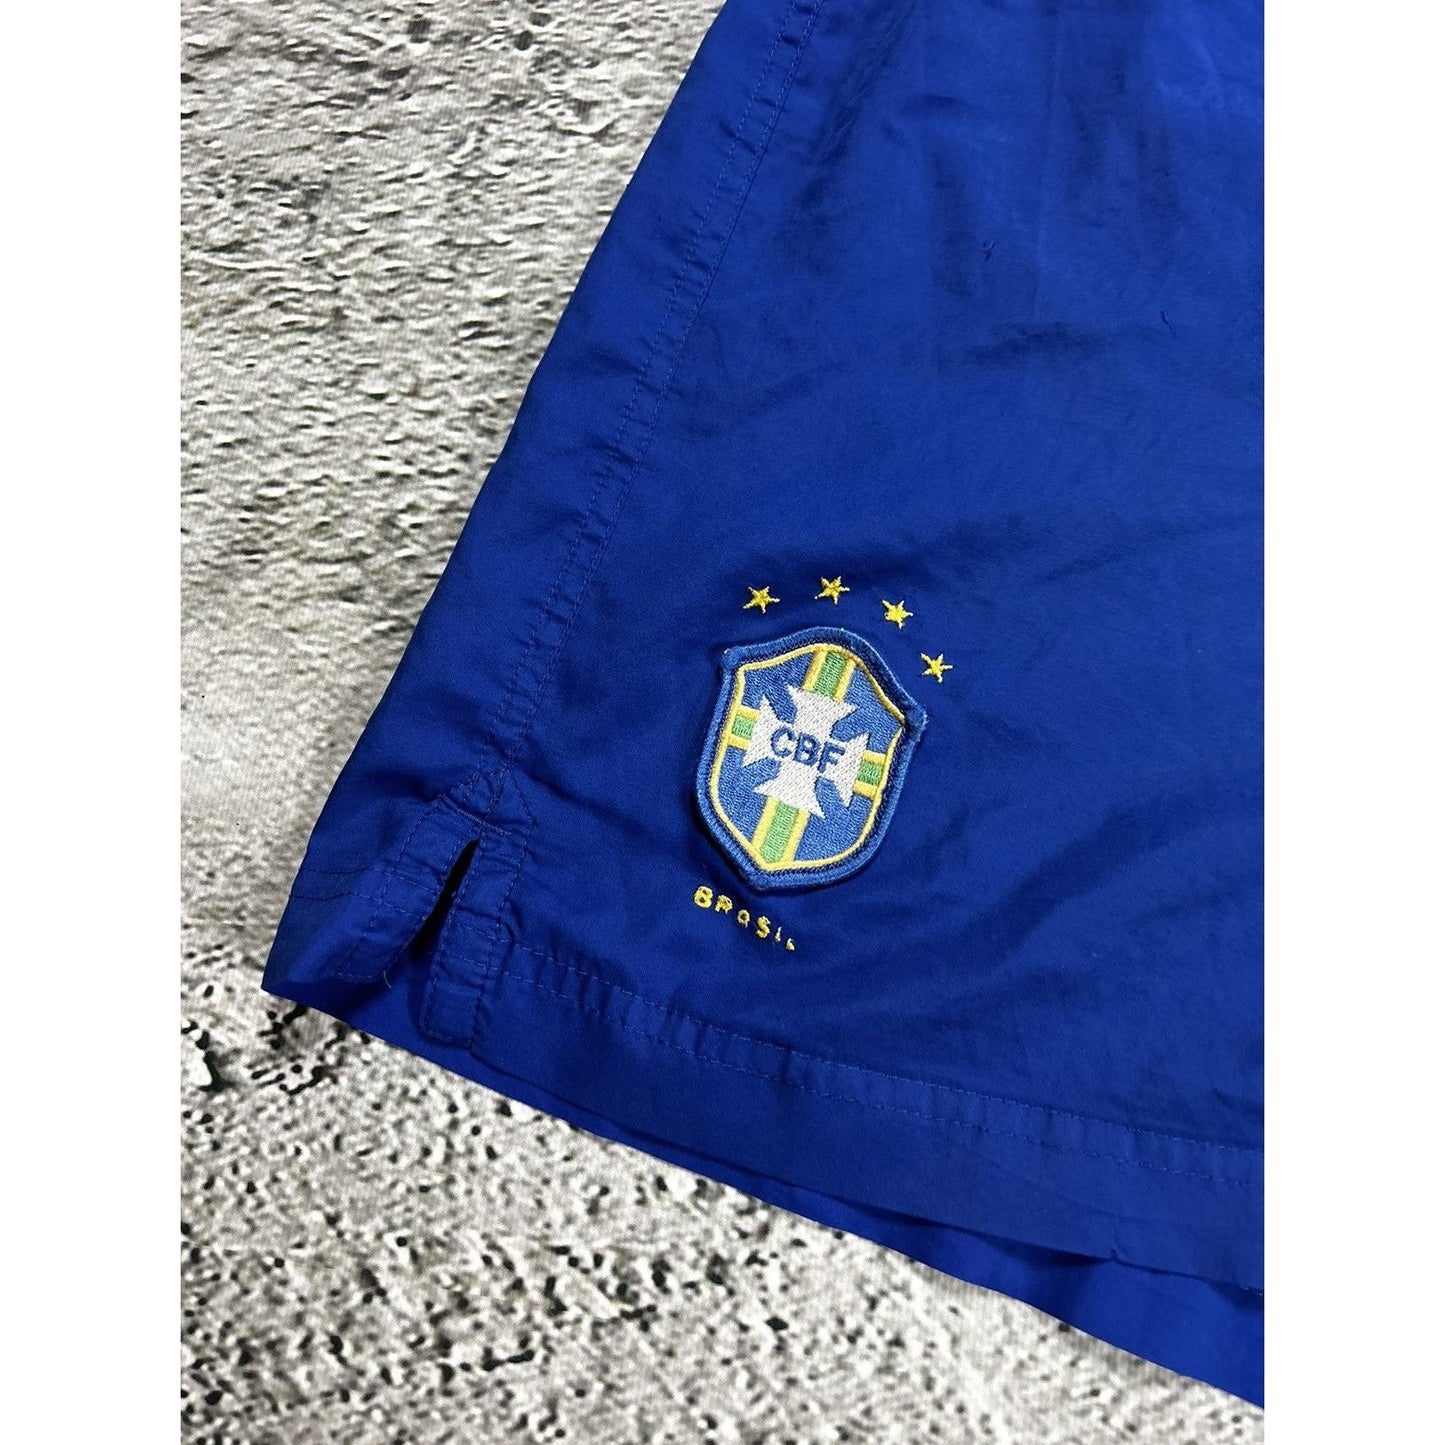 Brazil Nike vintage blue shorts track pant 2000s